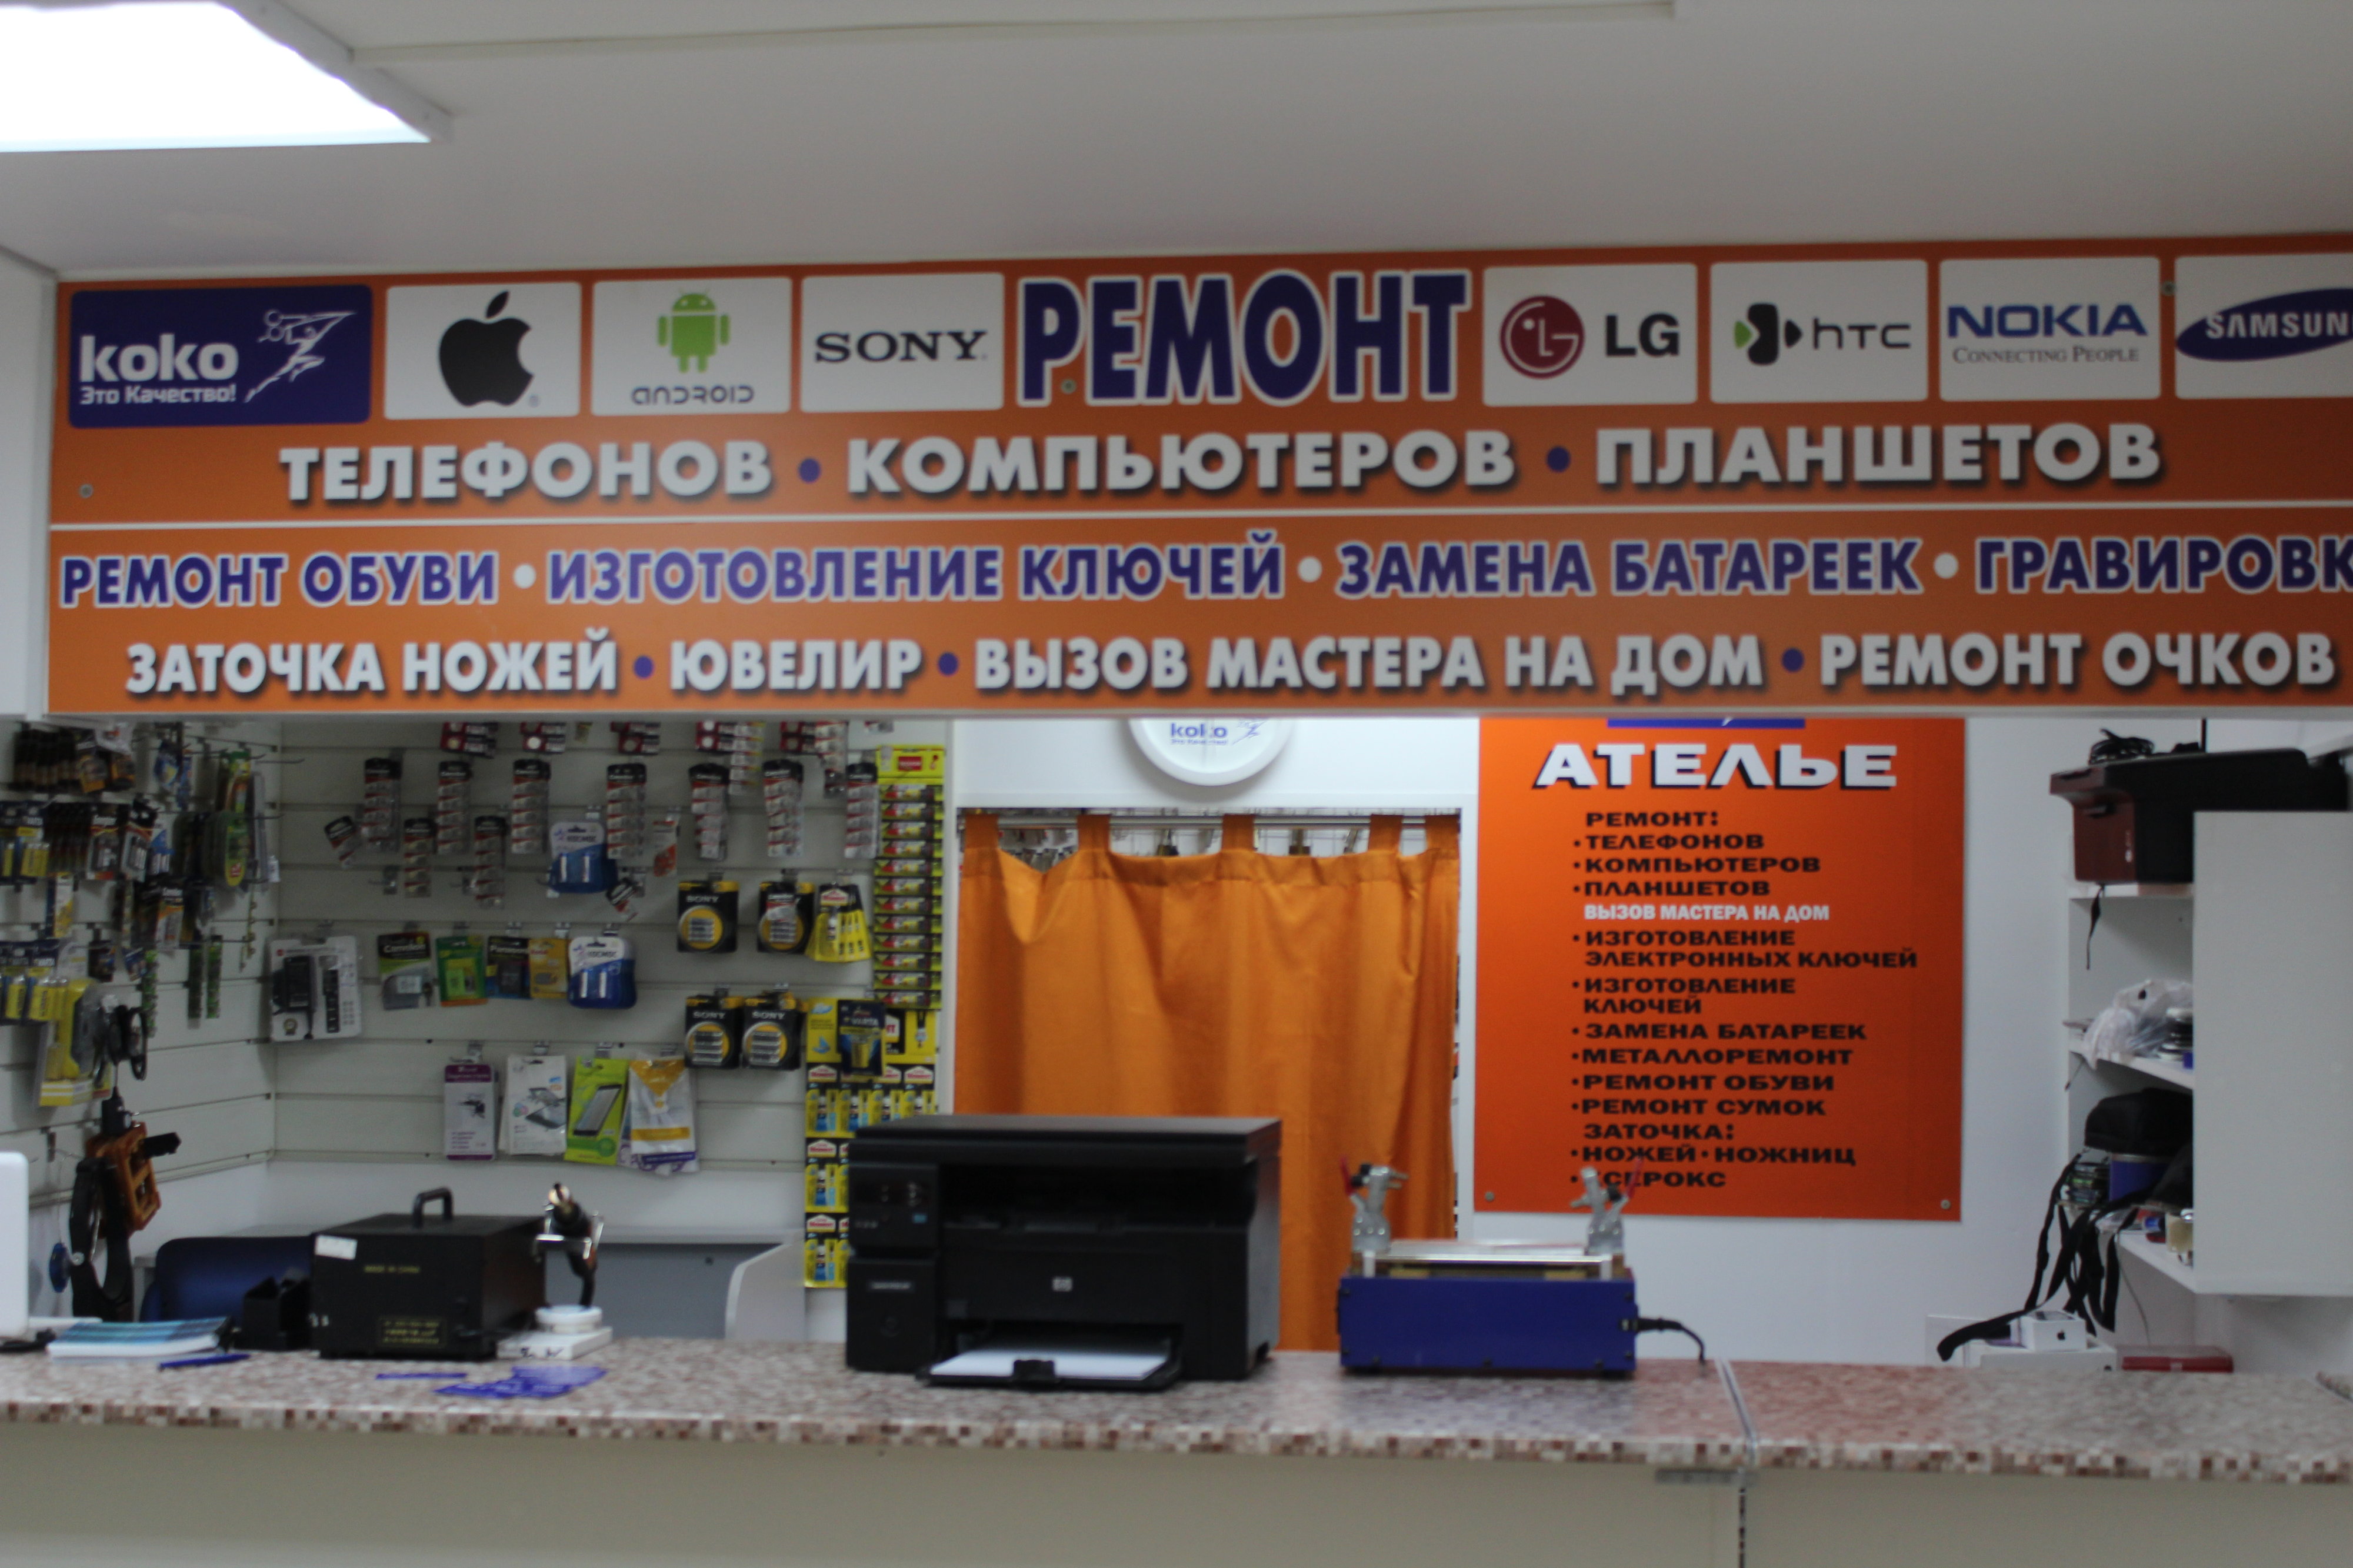 Профессиональный недорогой ремонт прицелов в Москве, 69 сервисных центров: адреса, телефоны, отзывы, цены на срочный ремонт прицелов